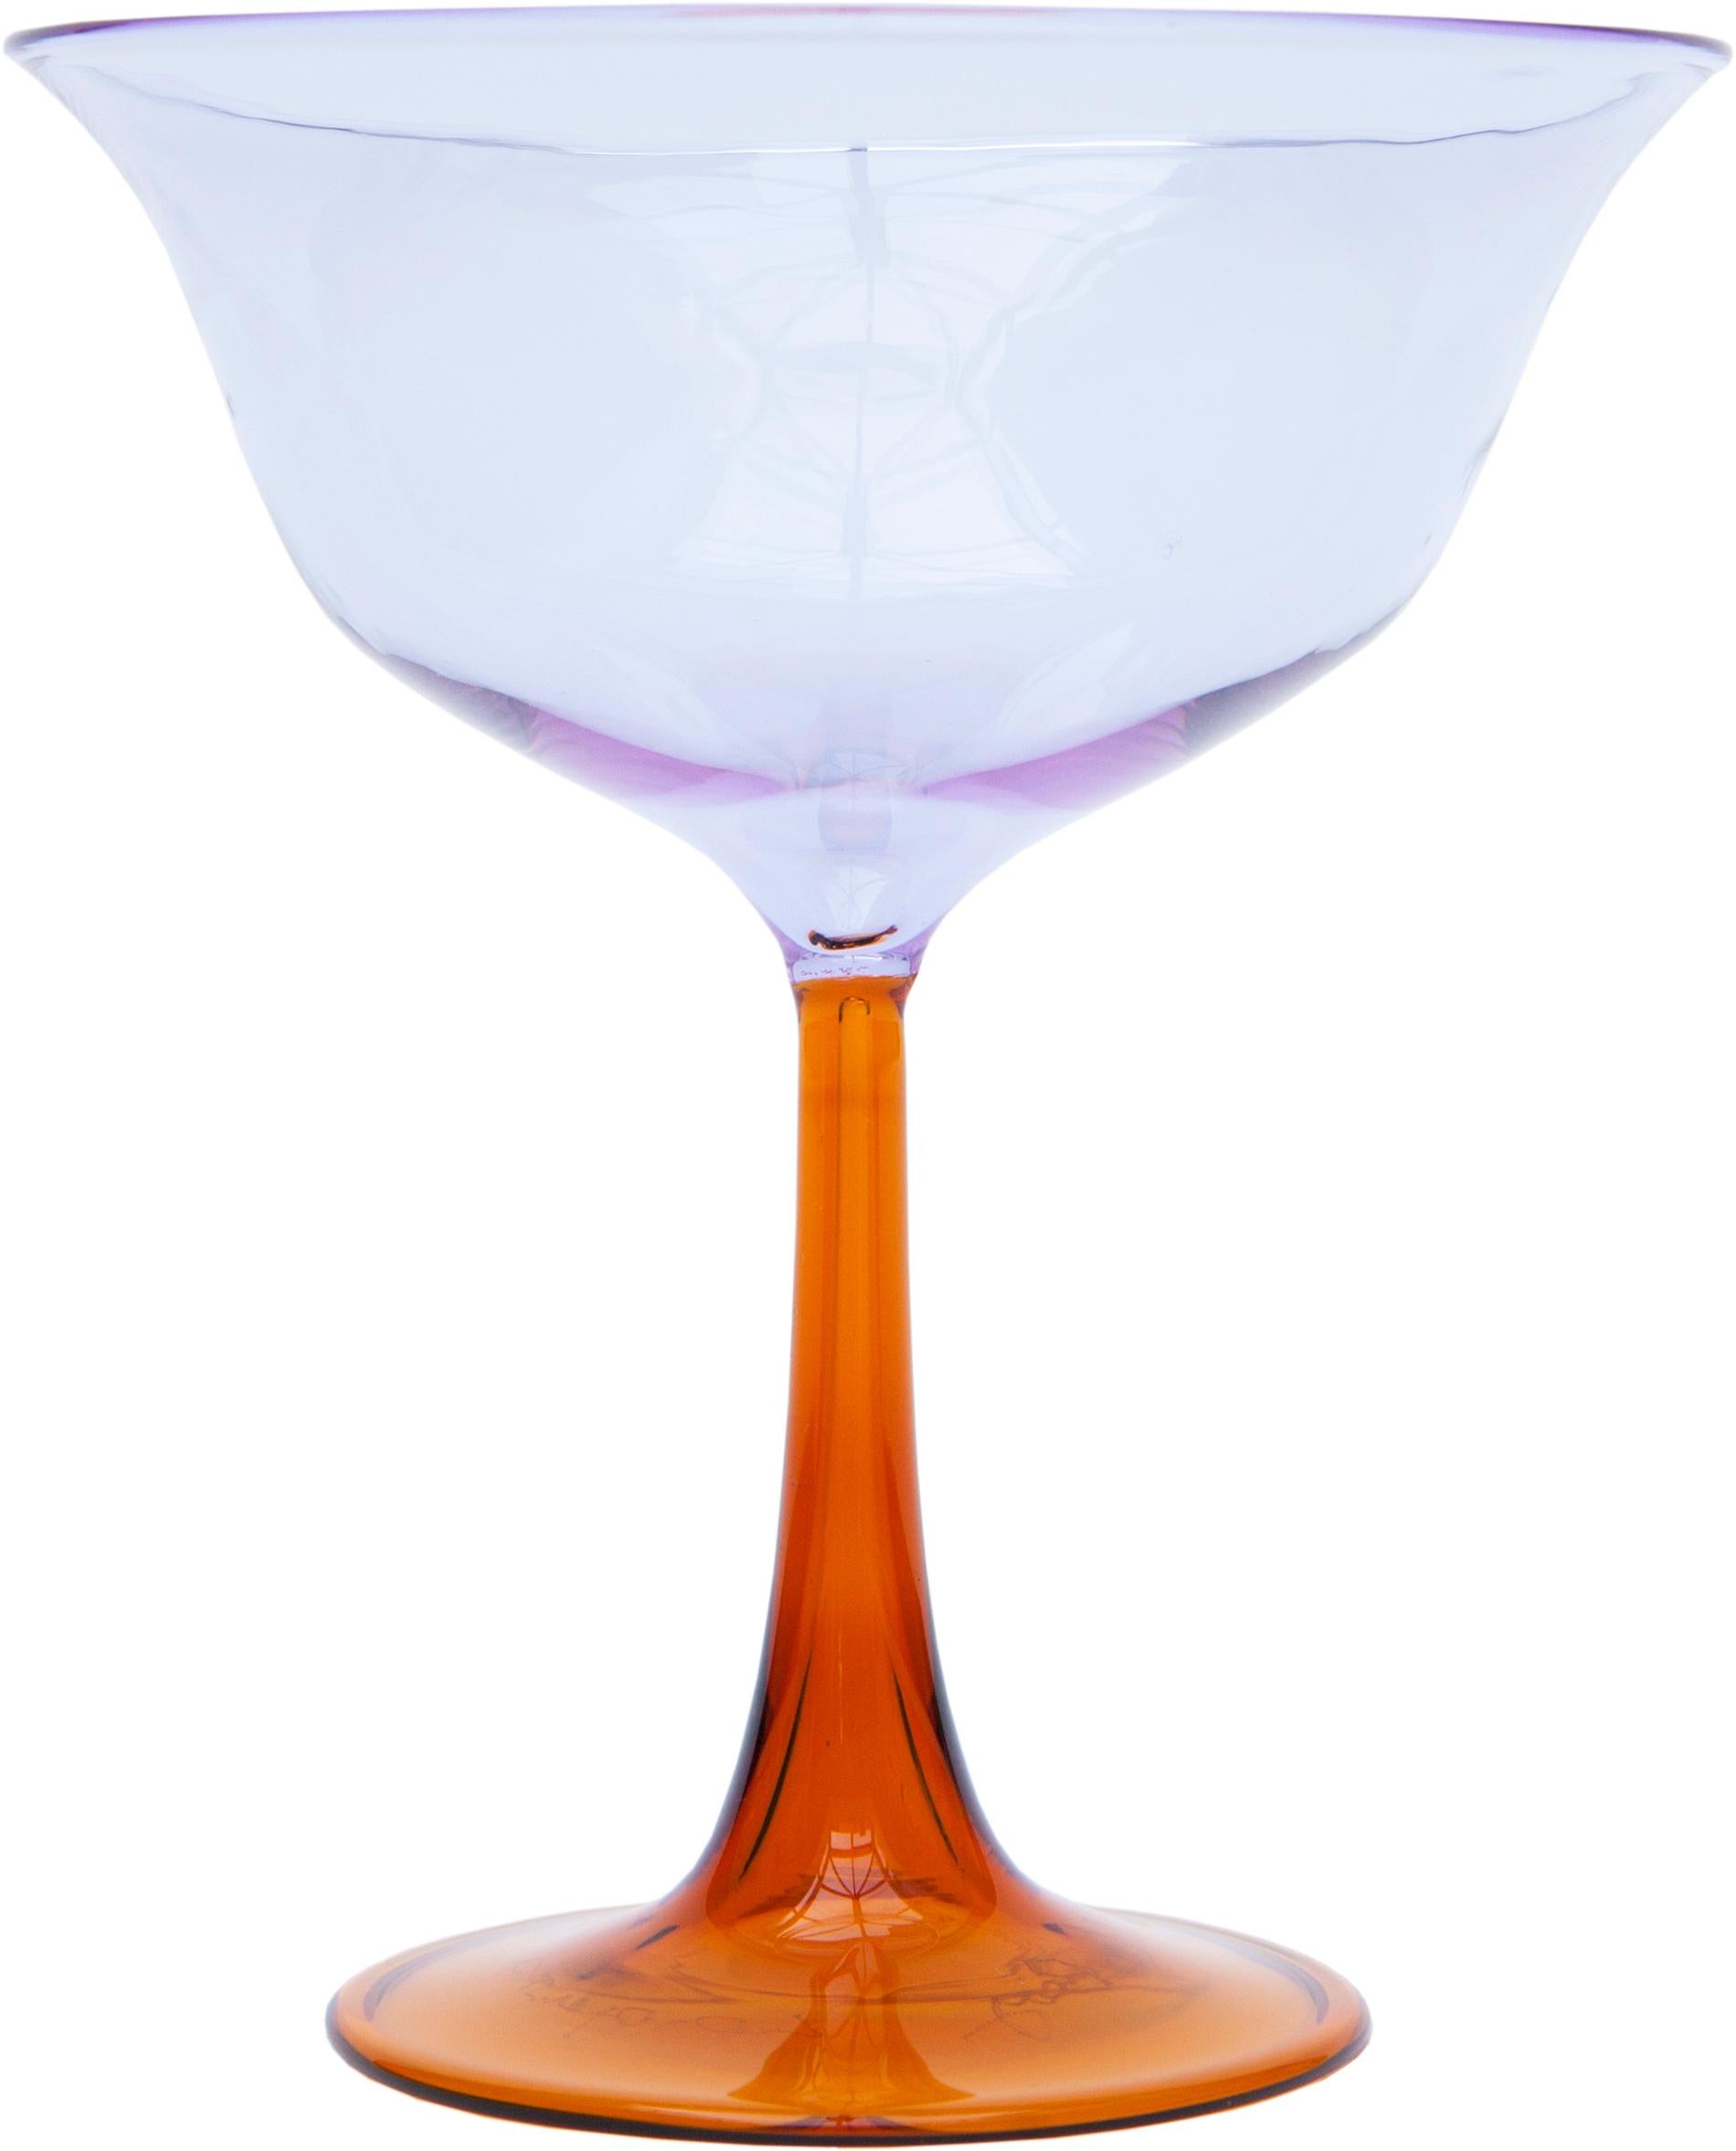 Campbell-Rey bringt zwei neue Kollektionen mundgeblasener Murano-Glaswaren aus Pyrex auf den Markt. Die beiden Geschwisterkollektionen Cosimo und Cosima sind eine Fortsetzung der engen Beziehung zwischen Campbell-Rey und dem Glashersteller Laguna B.